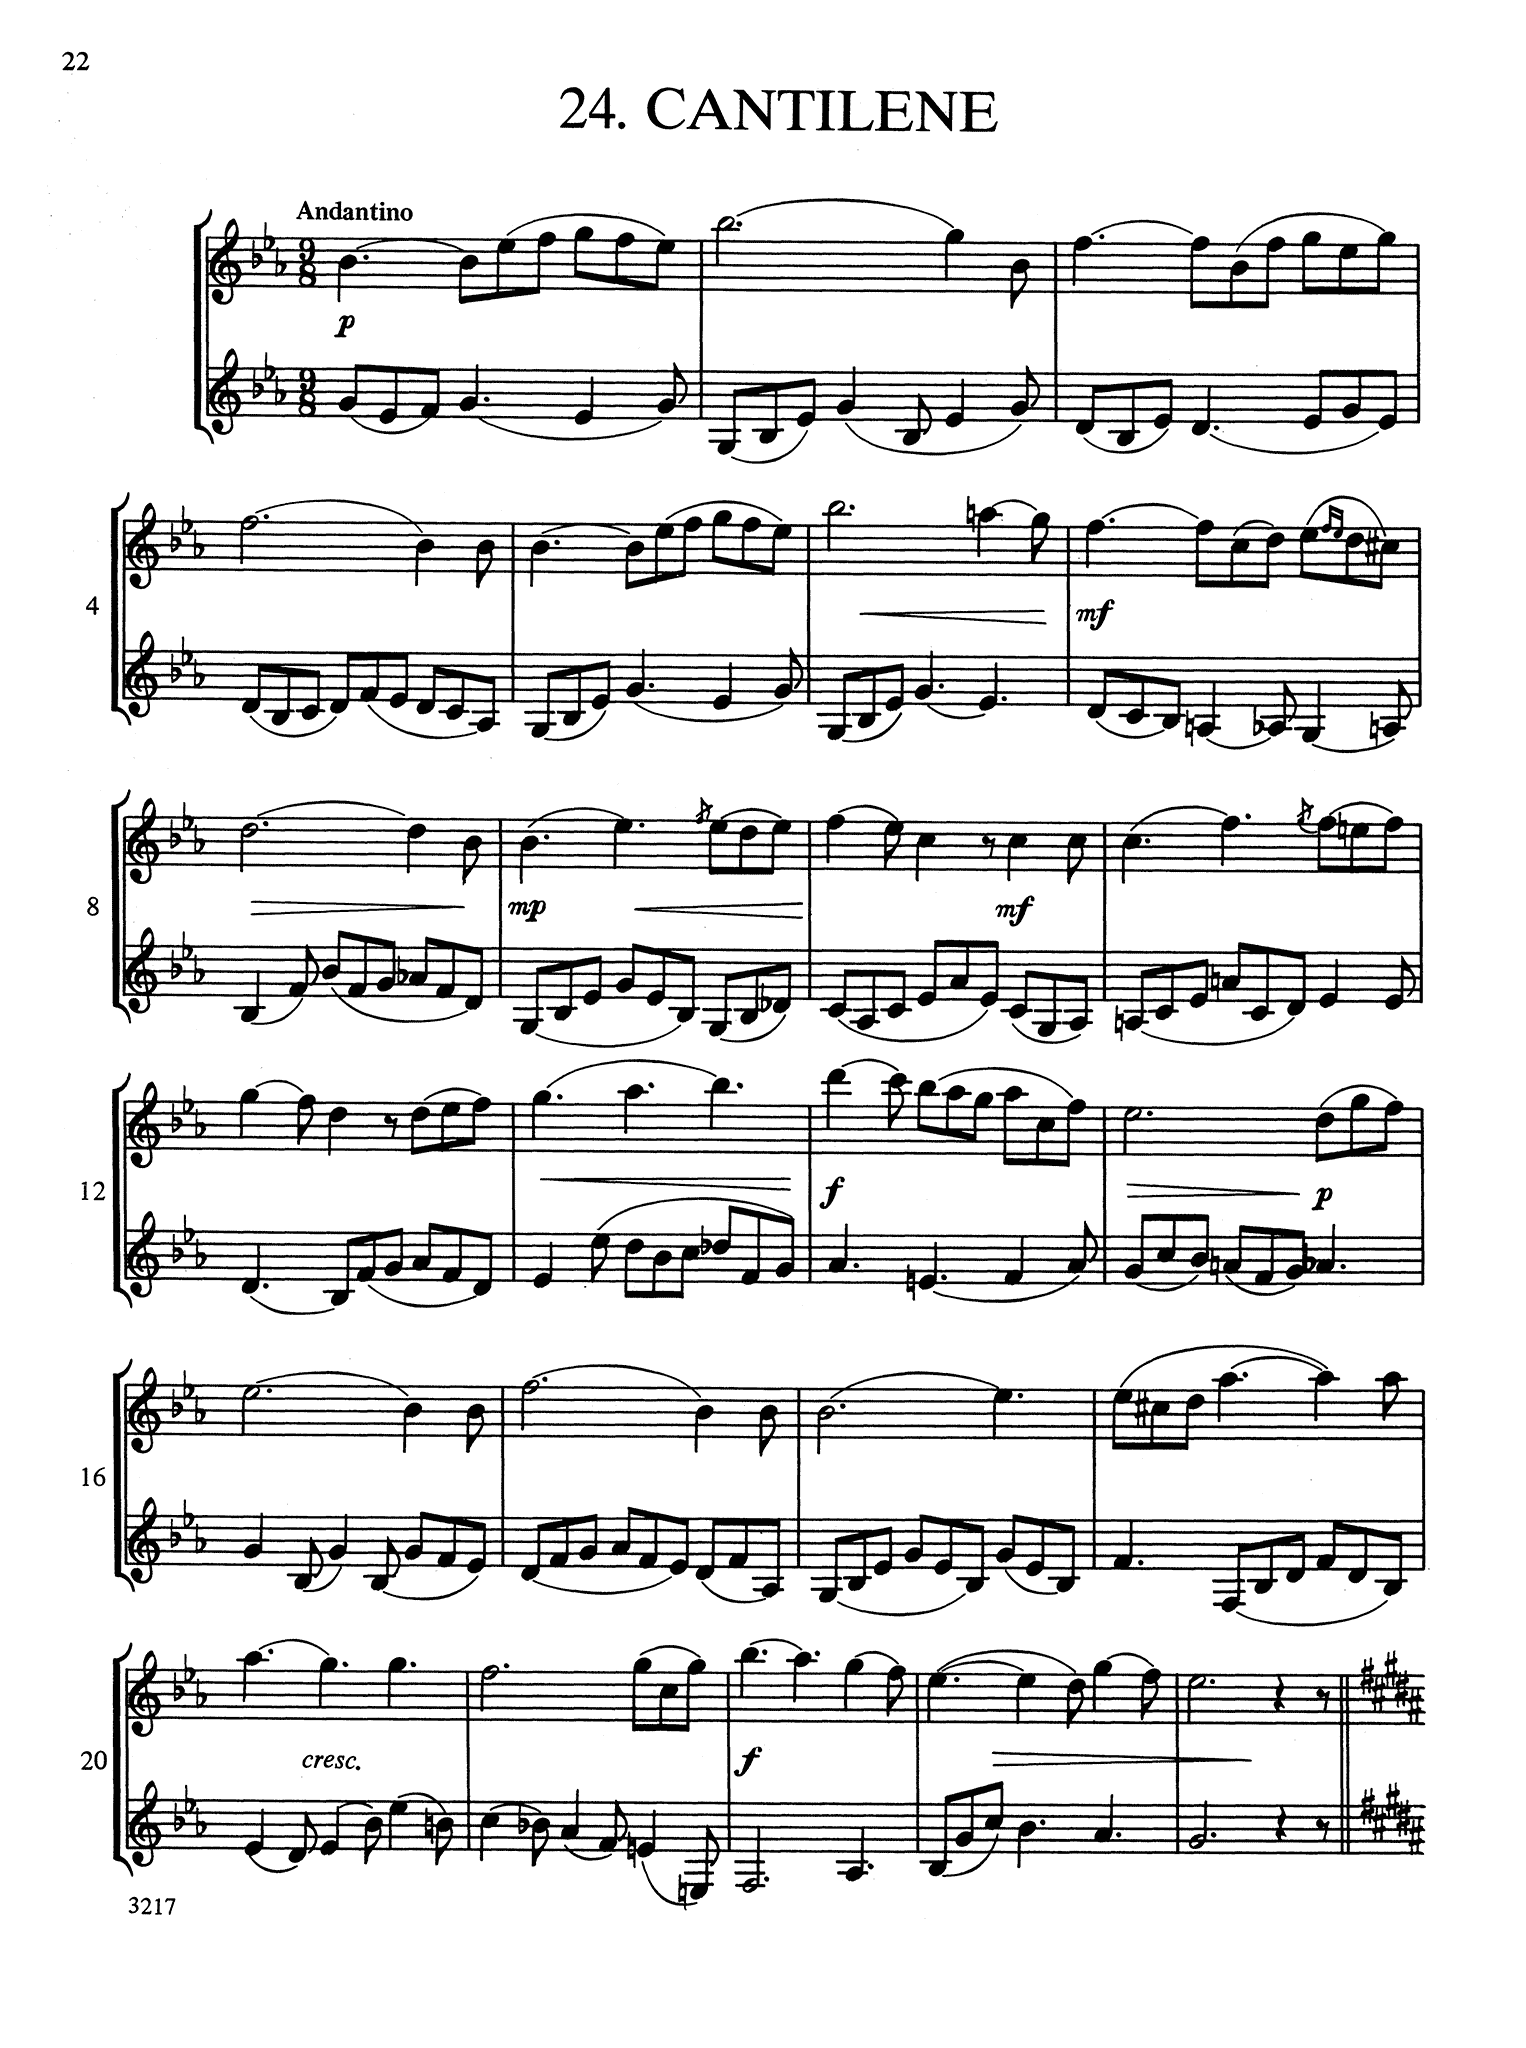 Wiedemann Clarinet Studies, Book 2 page 22